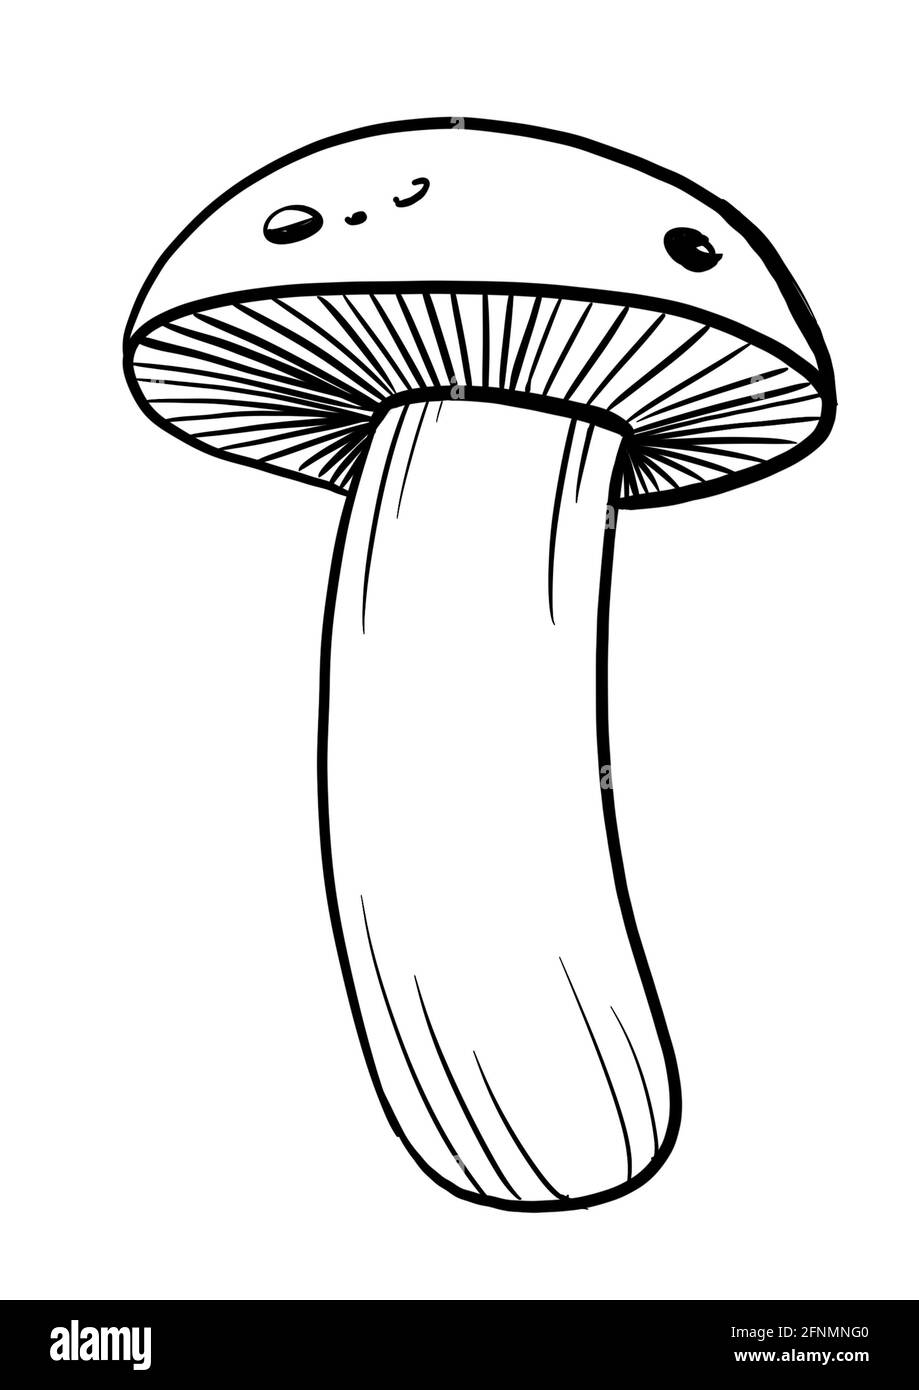 Mushroom sketch art. Digital lines illustration Stock Photo